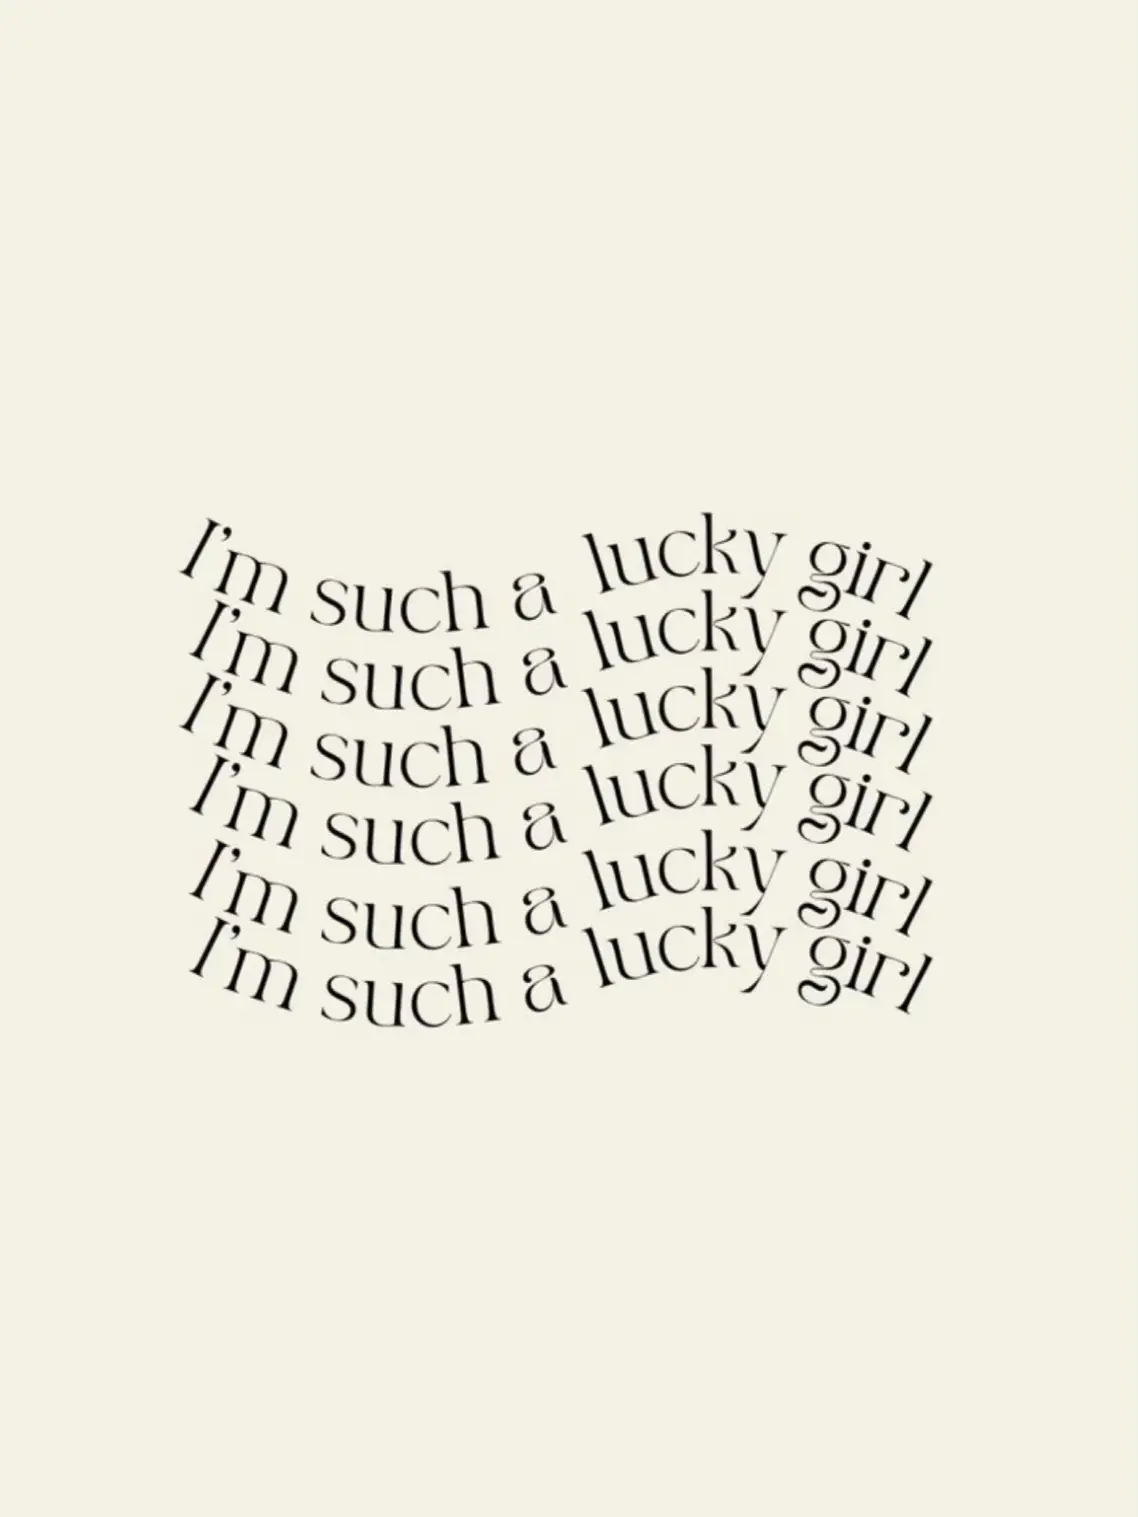  A row of text that says "I'm girl, I'm such, I'm lucky girl, I'm girl, I'm such, I'm lucky girl, I'm girl,